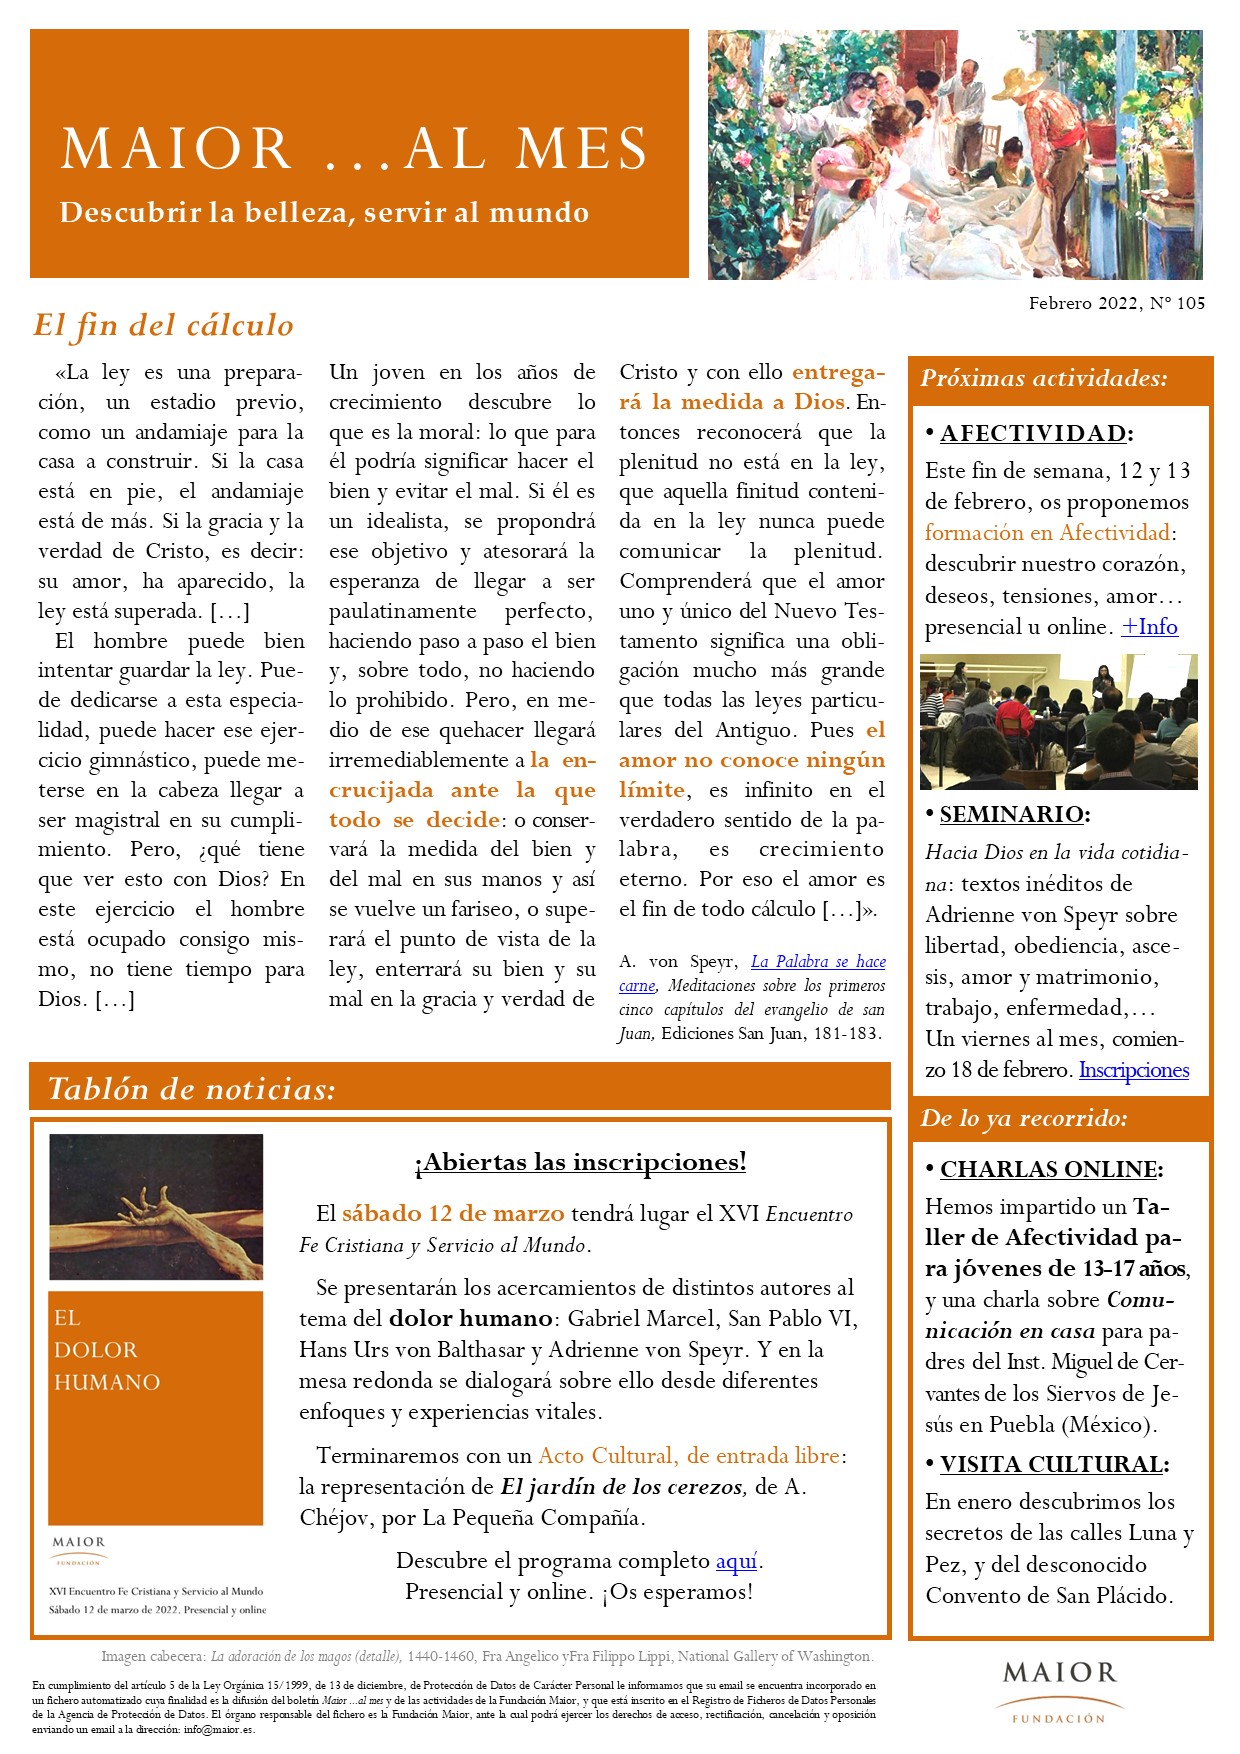 Boletín mensual de noticias y actividades de la Fundación Maior. Edición de febrero 2022